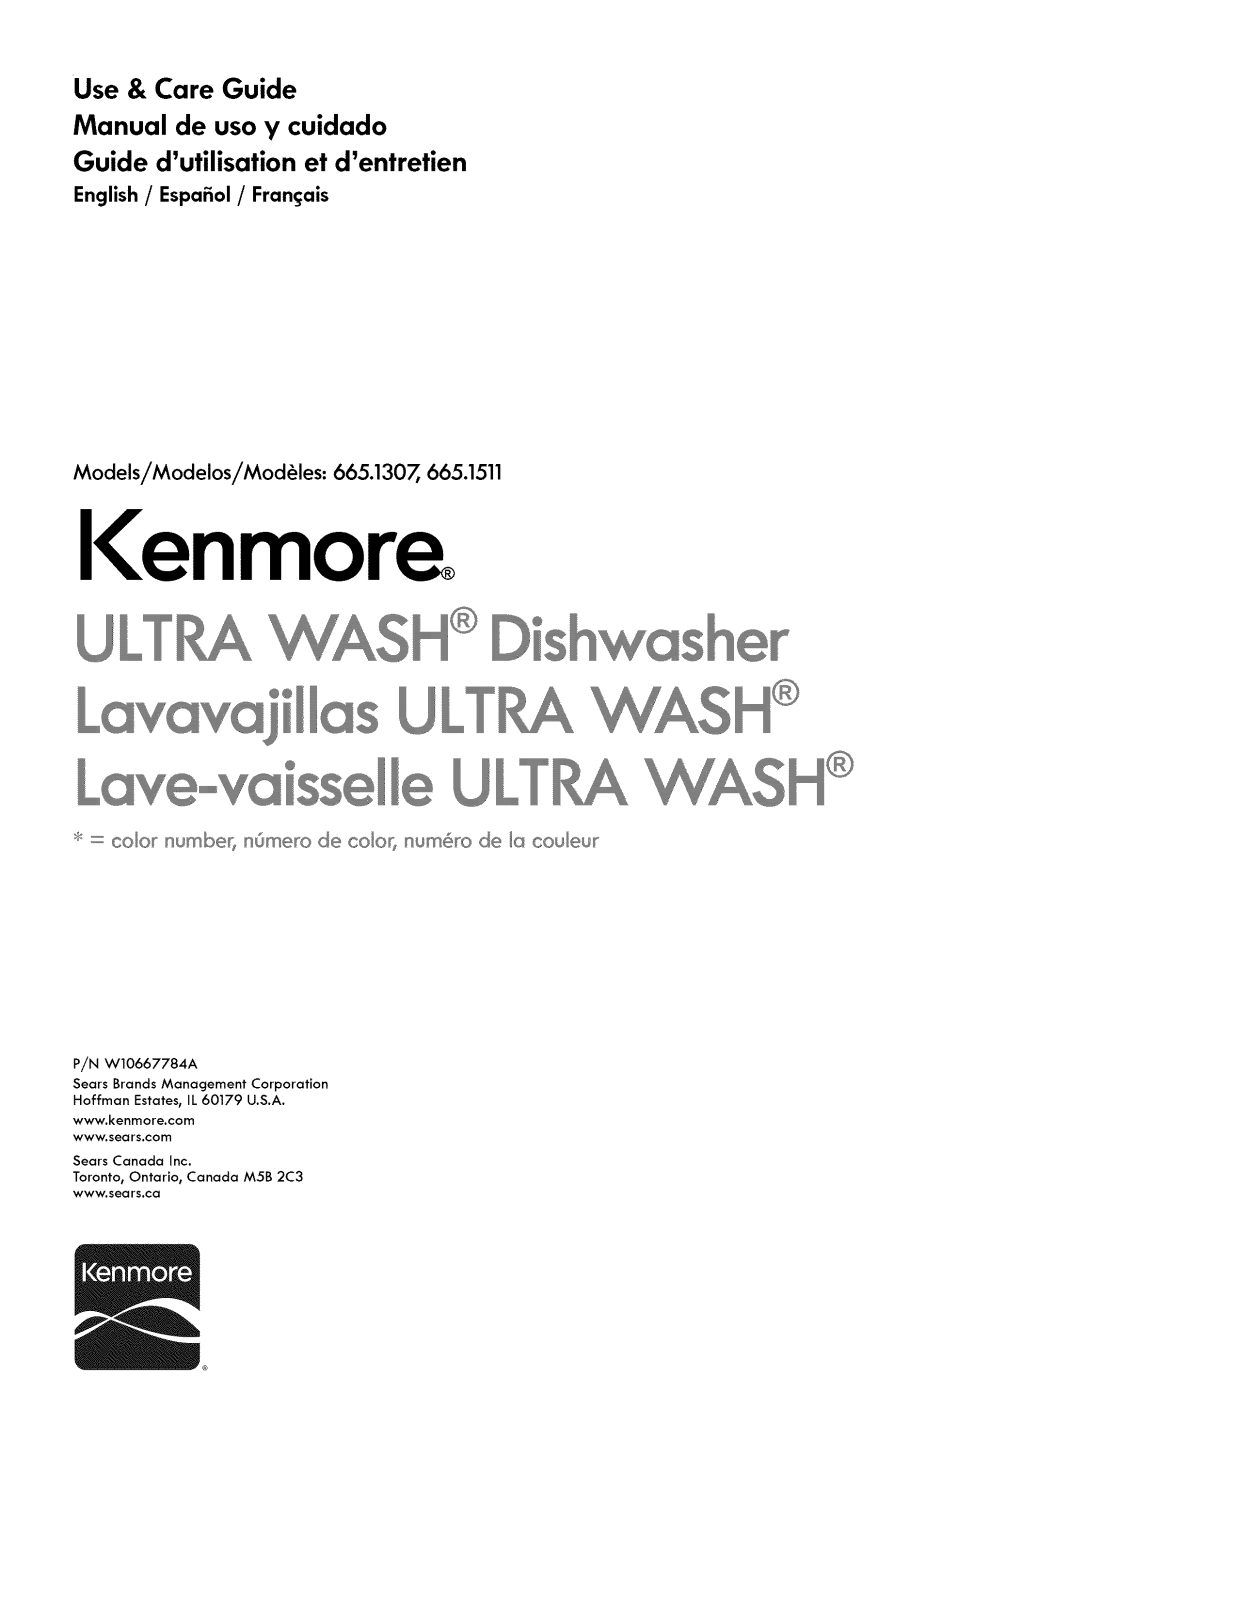 Kenmore 66515119K218, 66515119K217, 66515119K216, 66515114K218, 66515114K217 Owner’s Manual